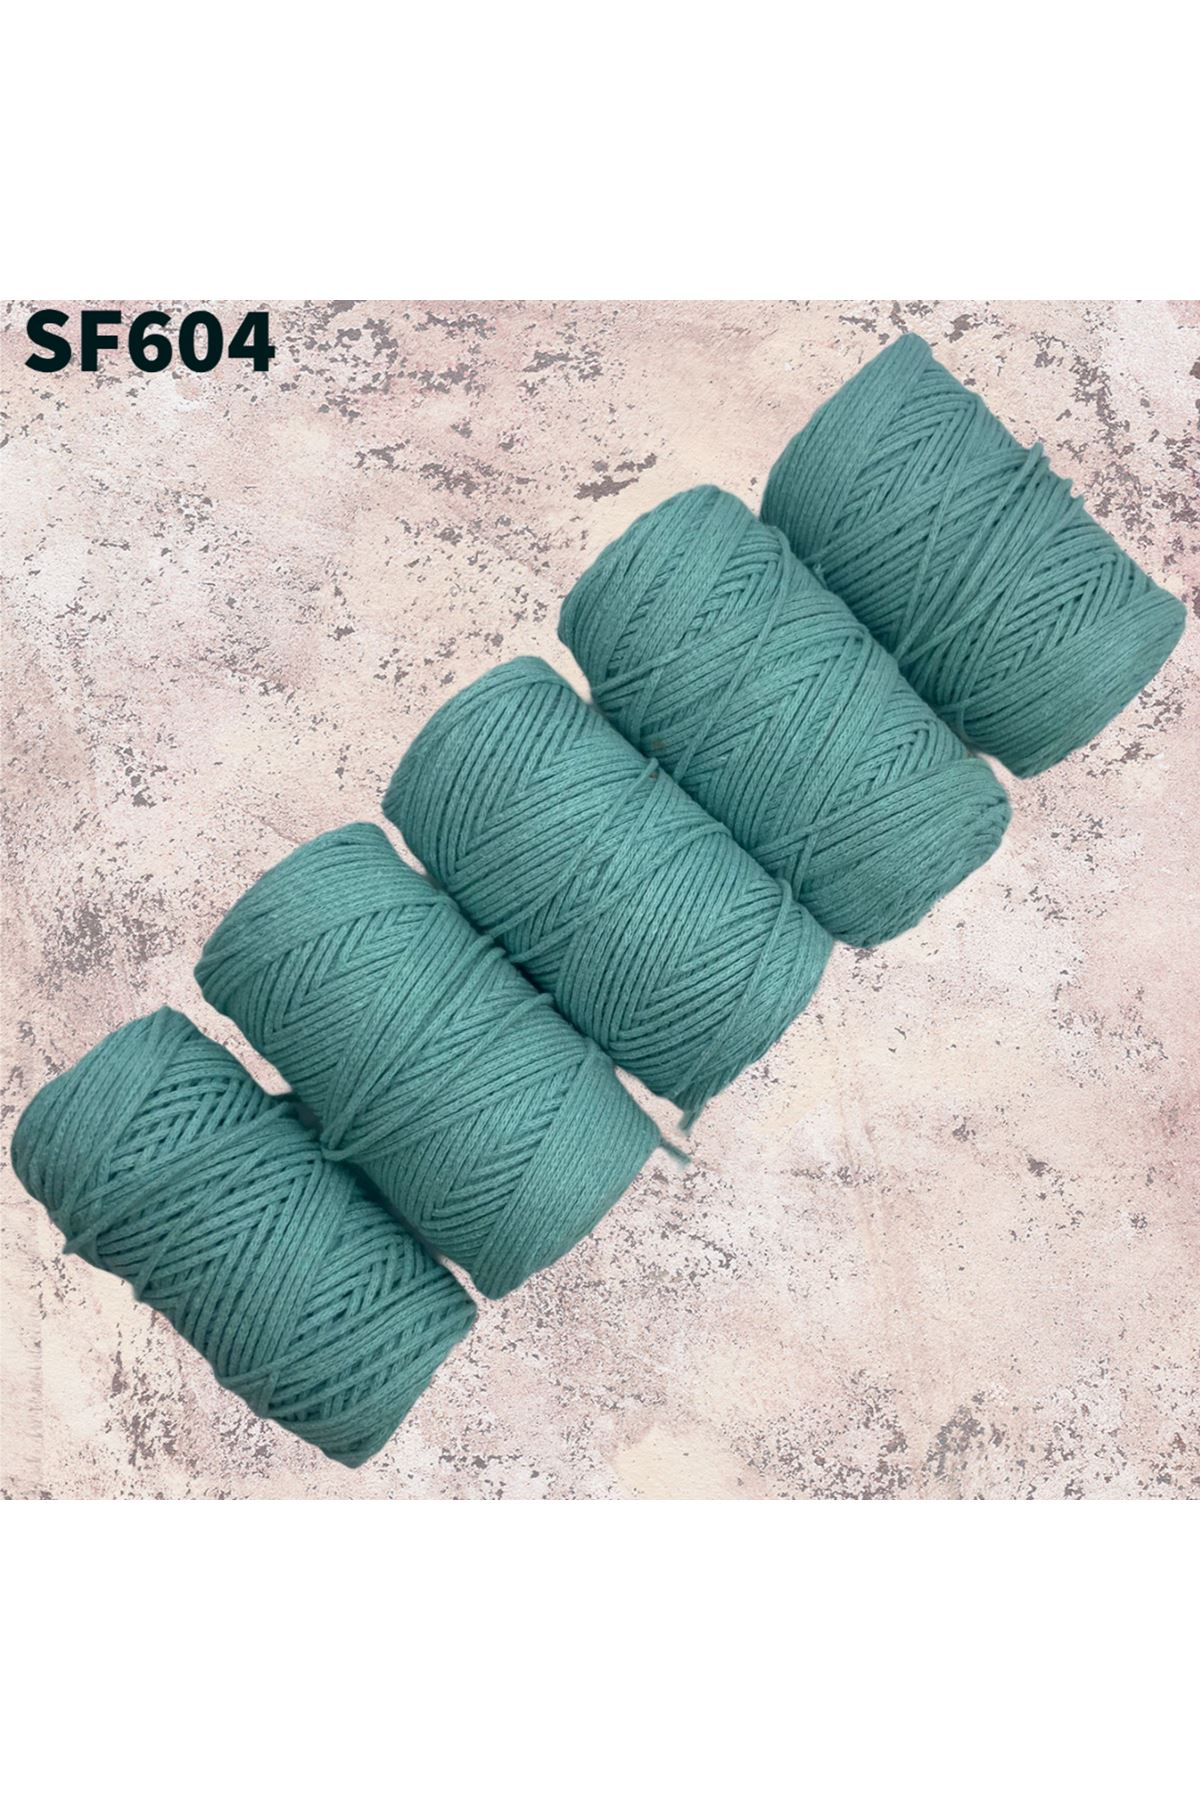 Stok Fazlası Cotton Makrome Bebe Yeşil 1000 Gram SF604